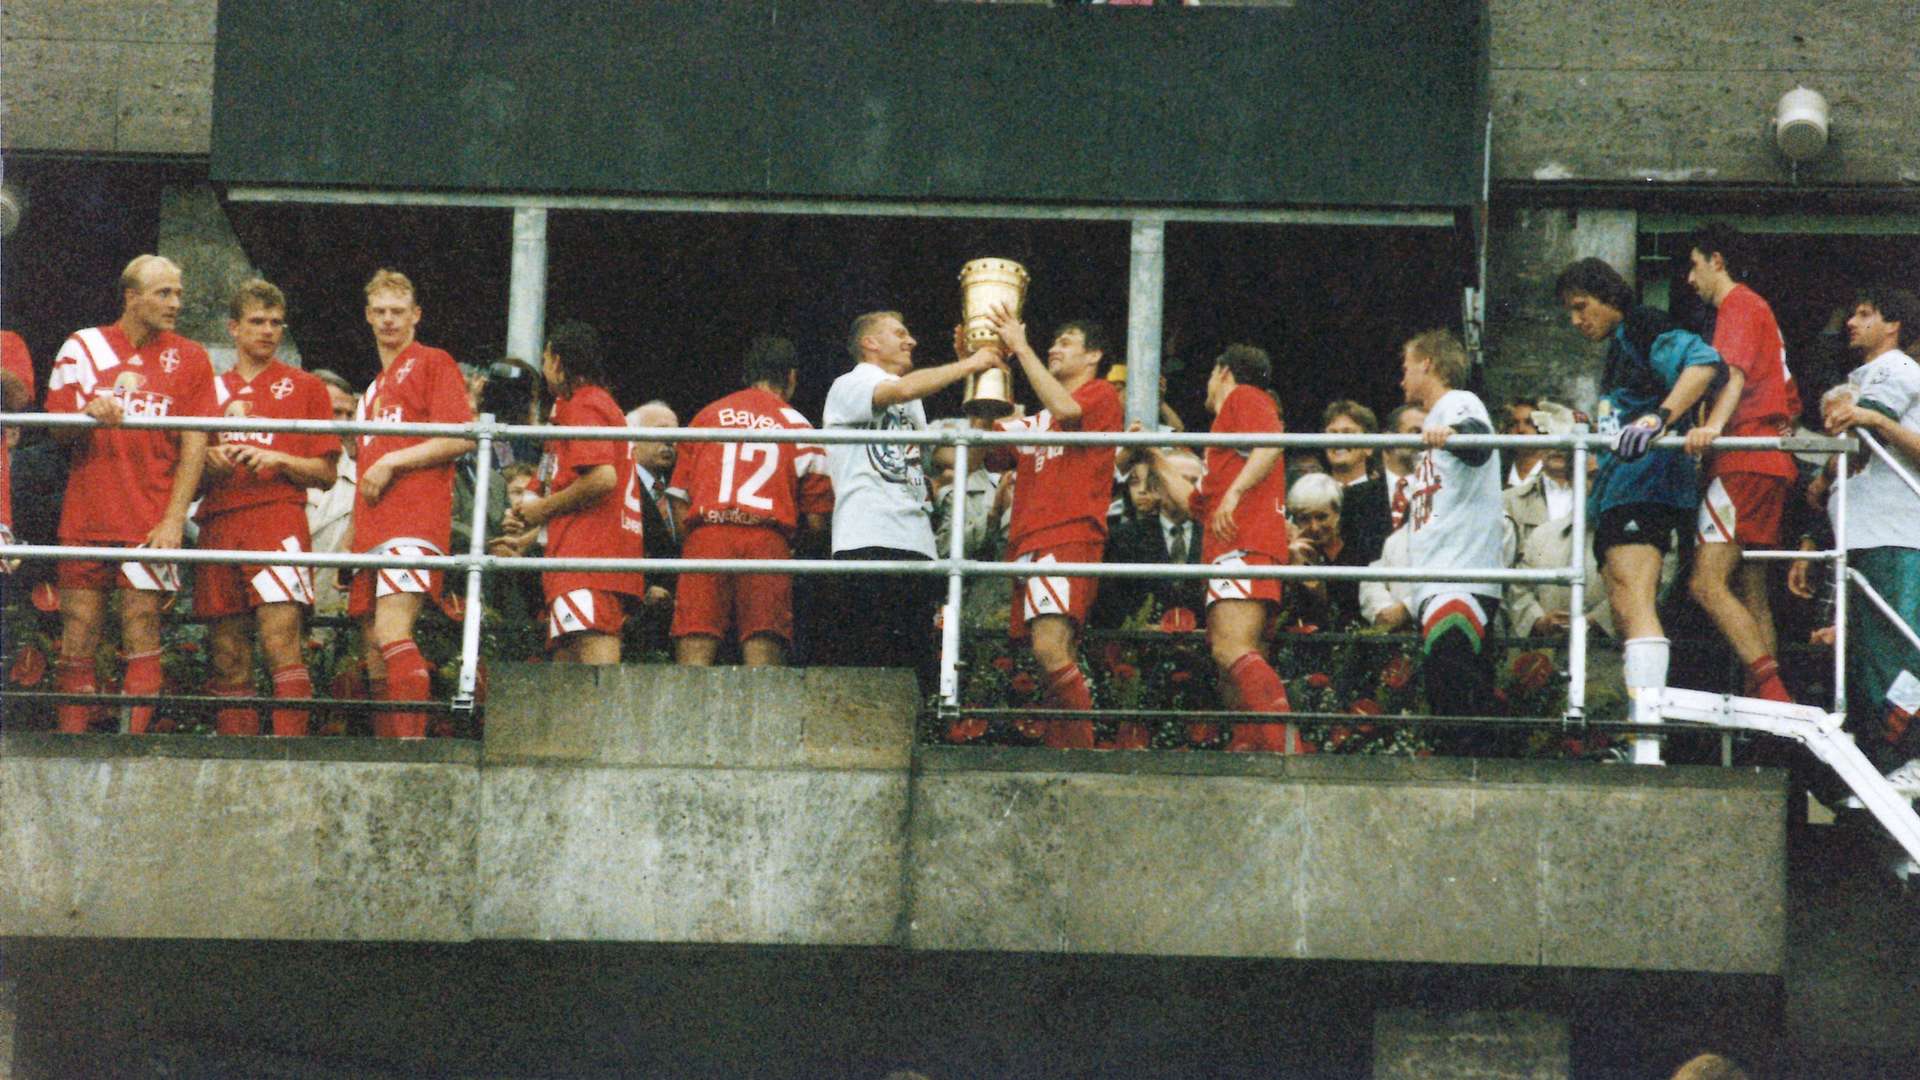 DFB Pokal win 1993